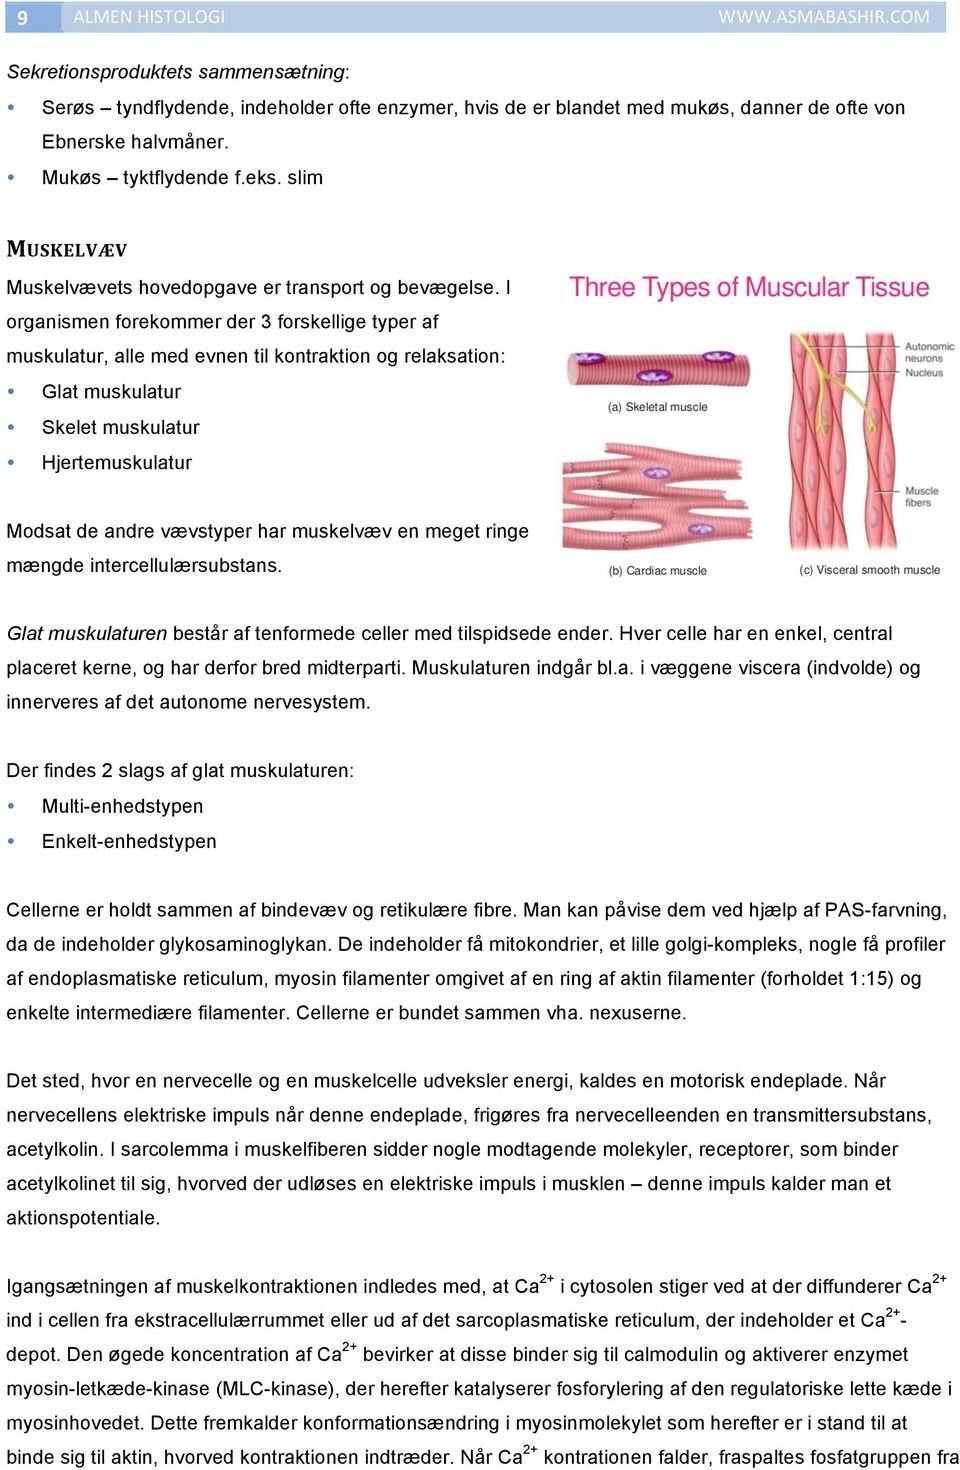 I organismen forekommer der 3 forskellige typer af muskulatur, alle med evnen til kontraktion og relaksation: Glat muskulatur Skelet muskulatur Hjertemuskulatur Modsat de andre vævstyper har